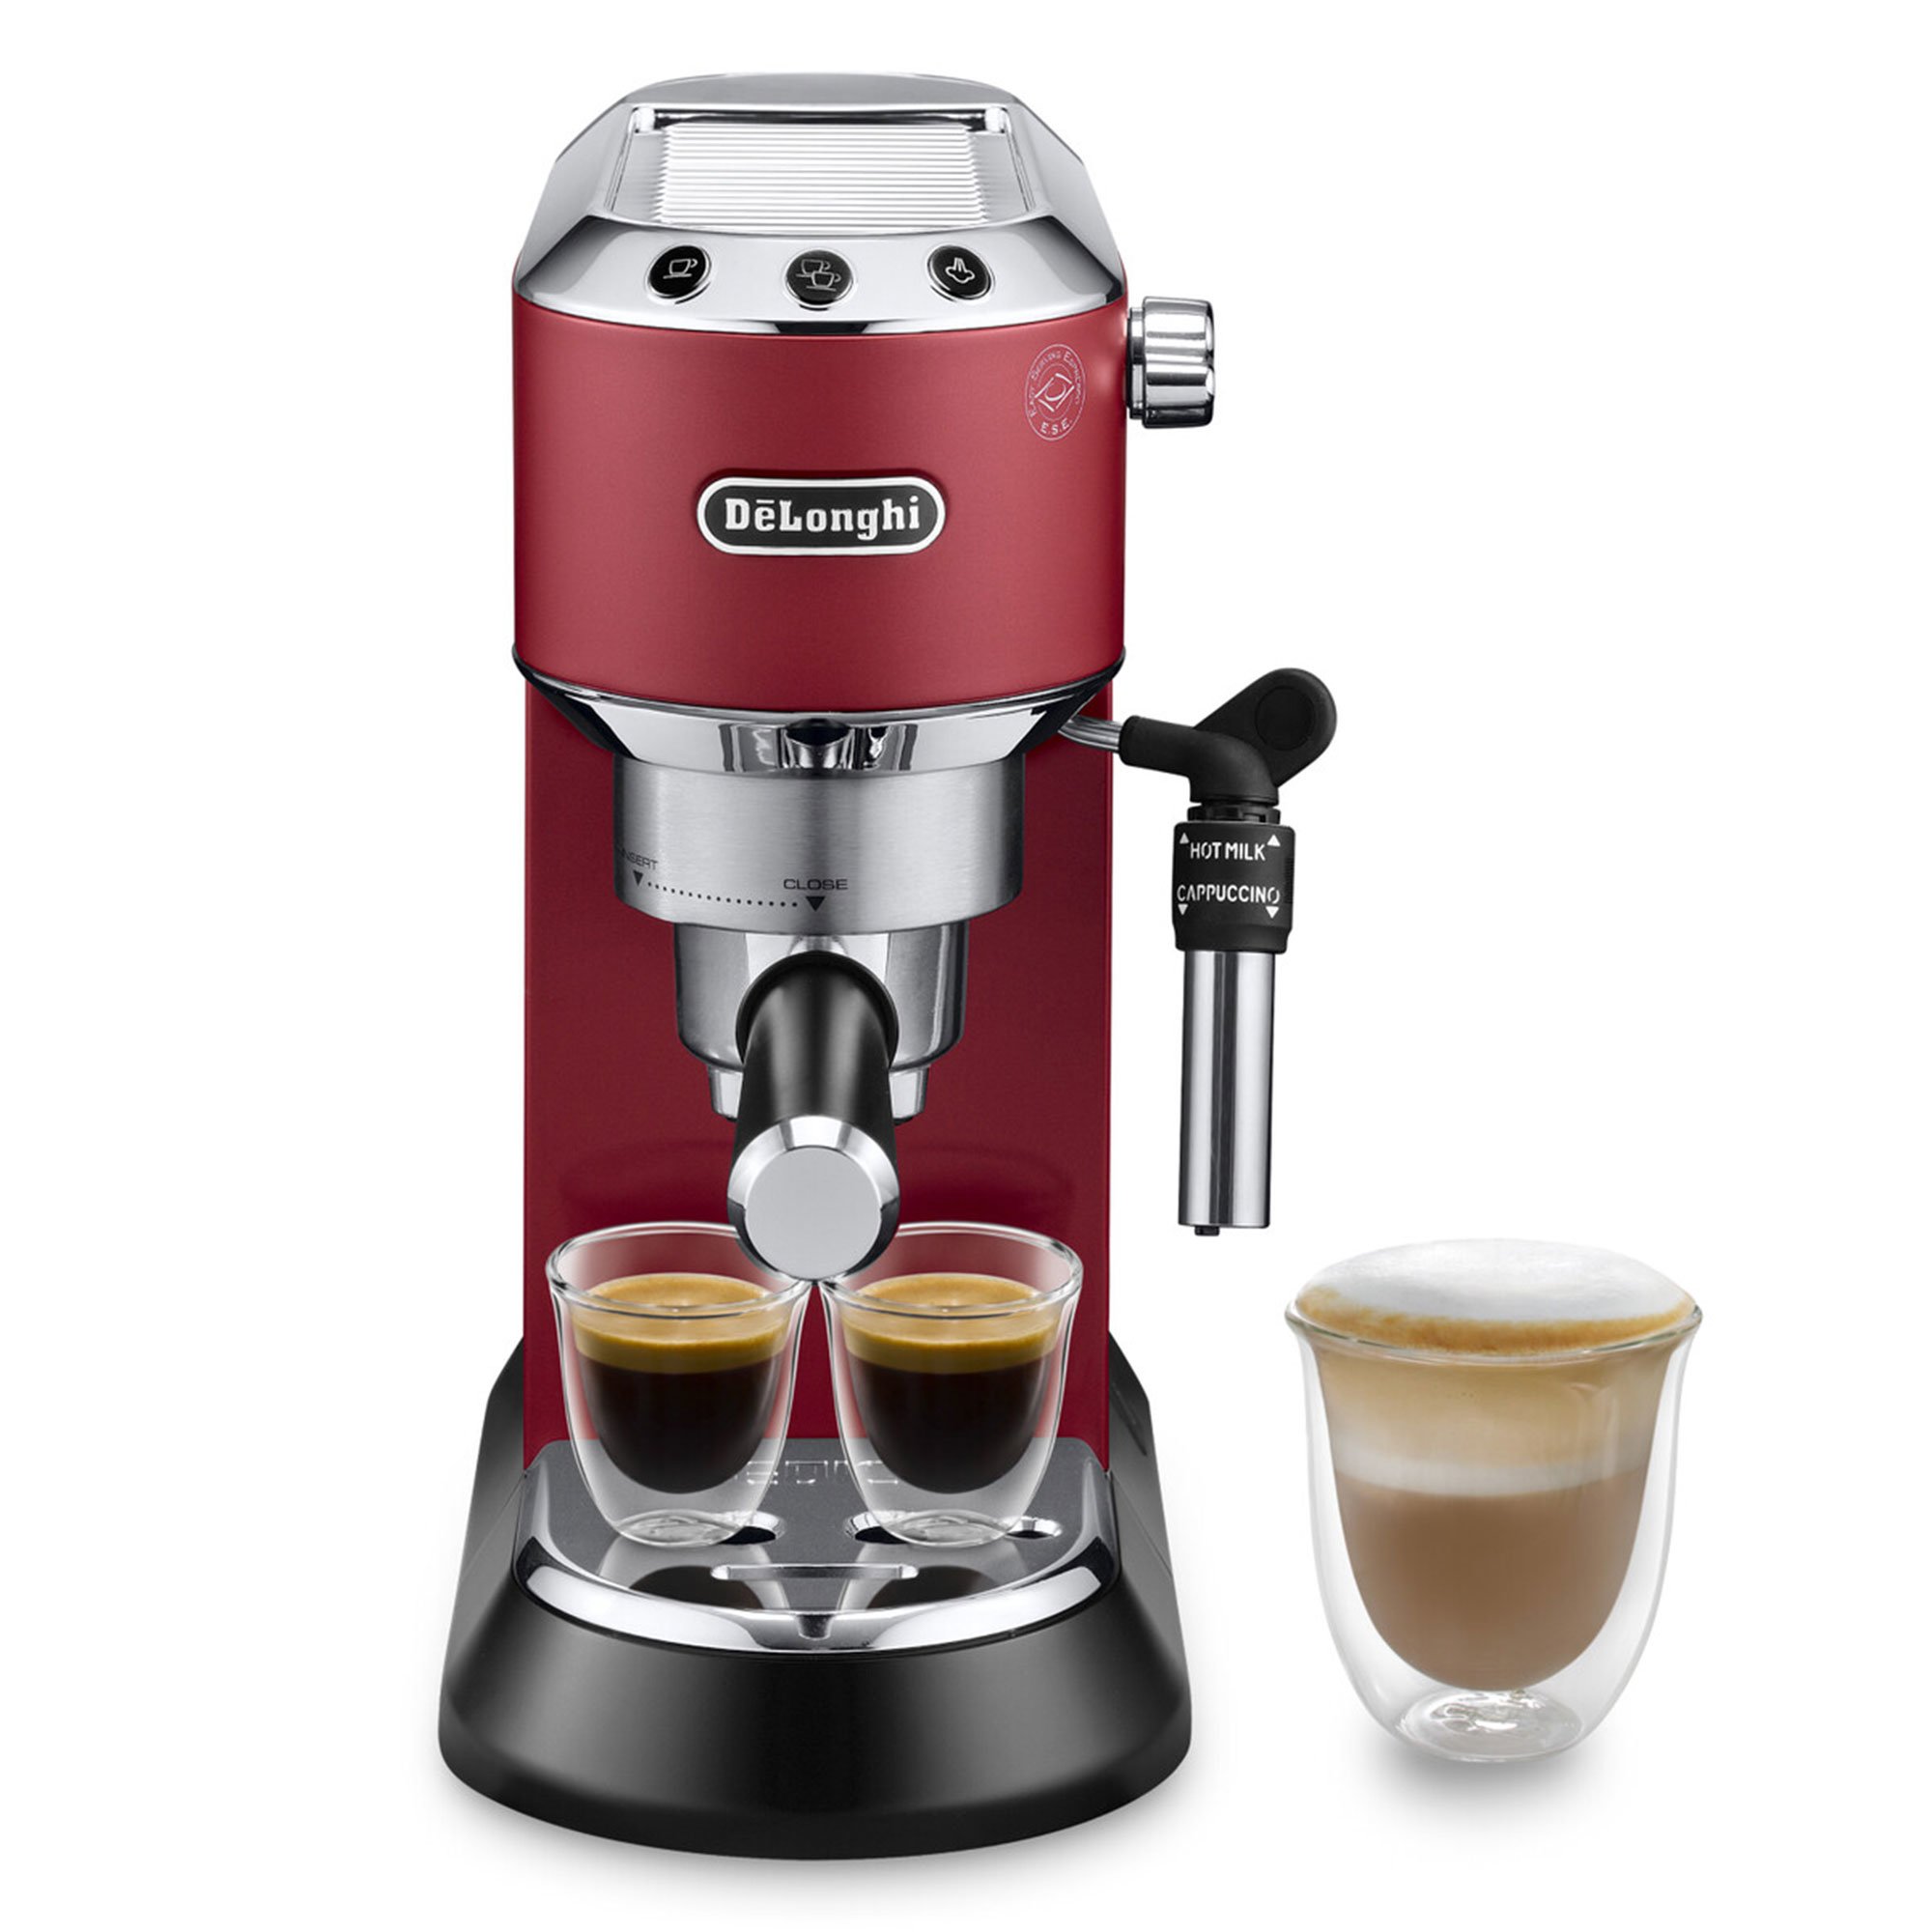 DeLonghi Espressomaskin EC685 Rød